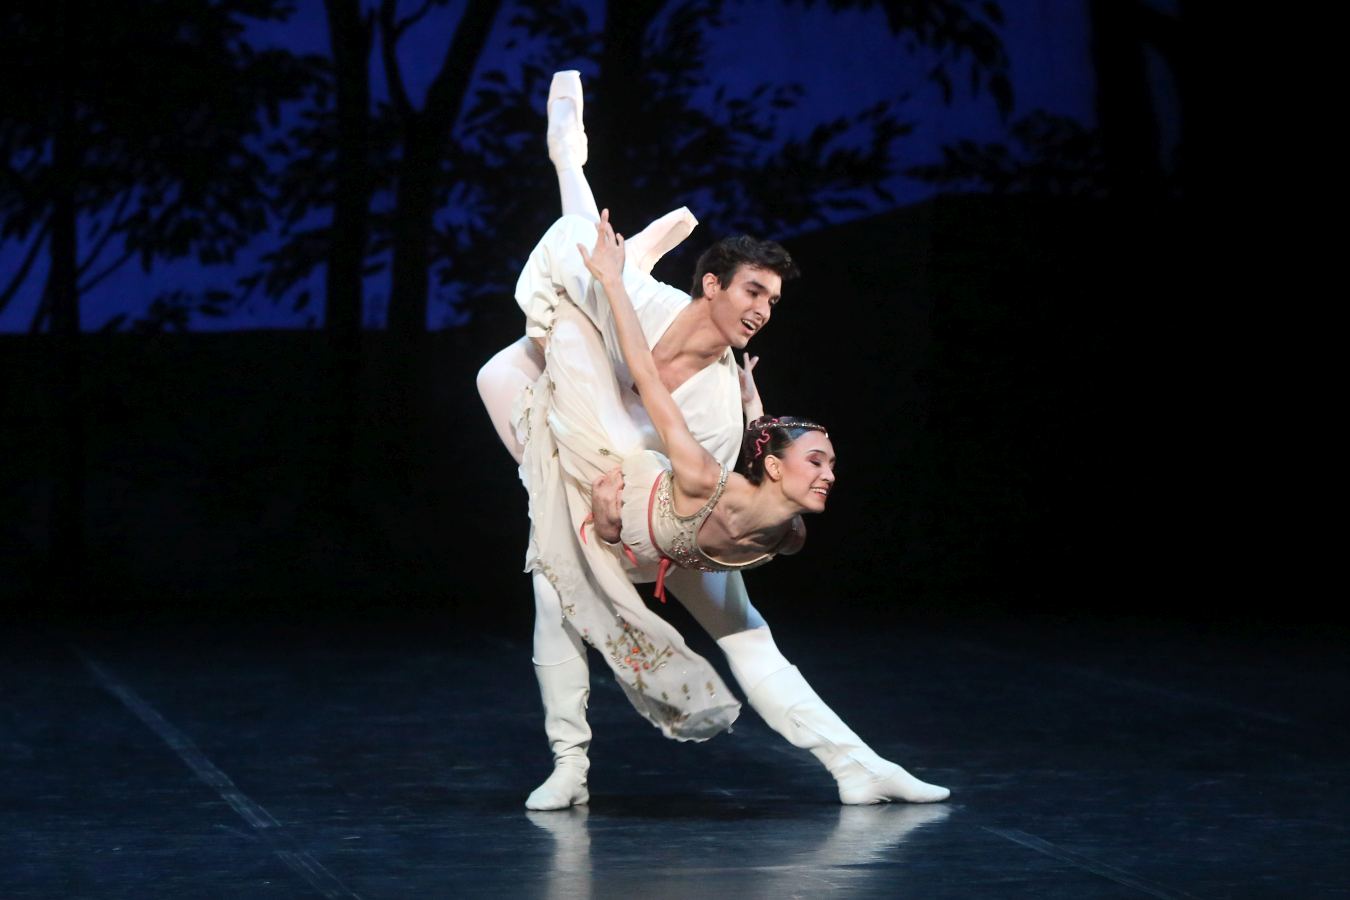 10. R.Aleman (Juliet) and M.F.Paixà (Romeo), “Rome and Juliet” by J.Cranko, Stuttgart Ballet 2018 © Stuttgart Ballet